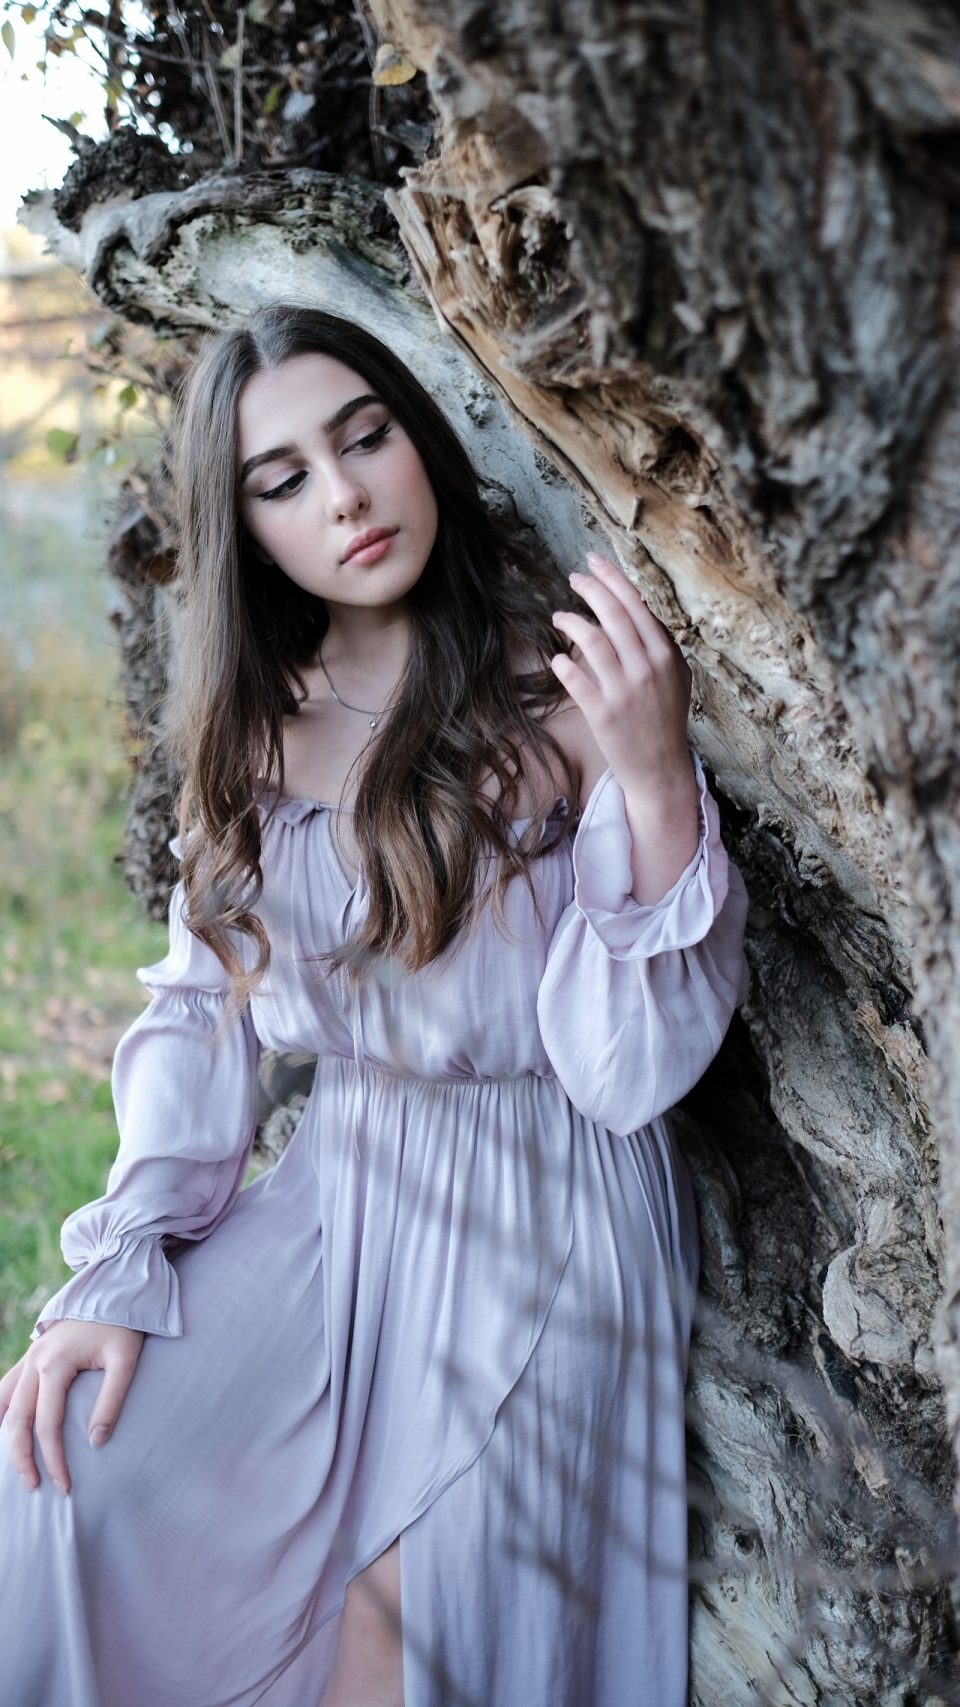 身着紫色长裙依靠在枯木旁的美女写真